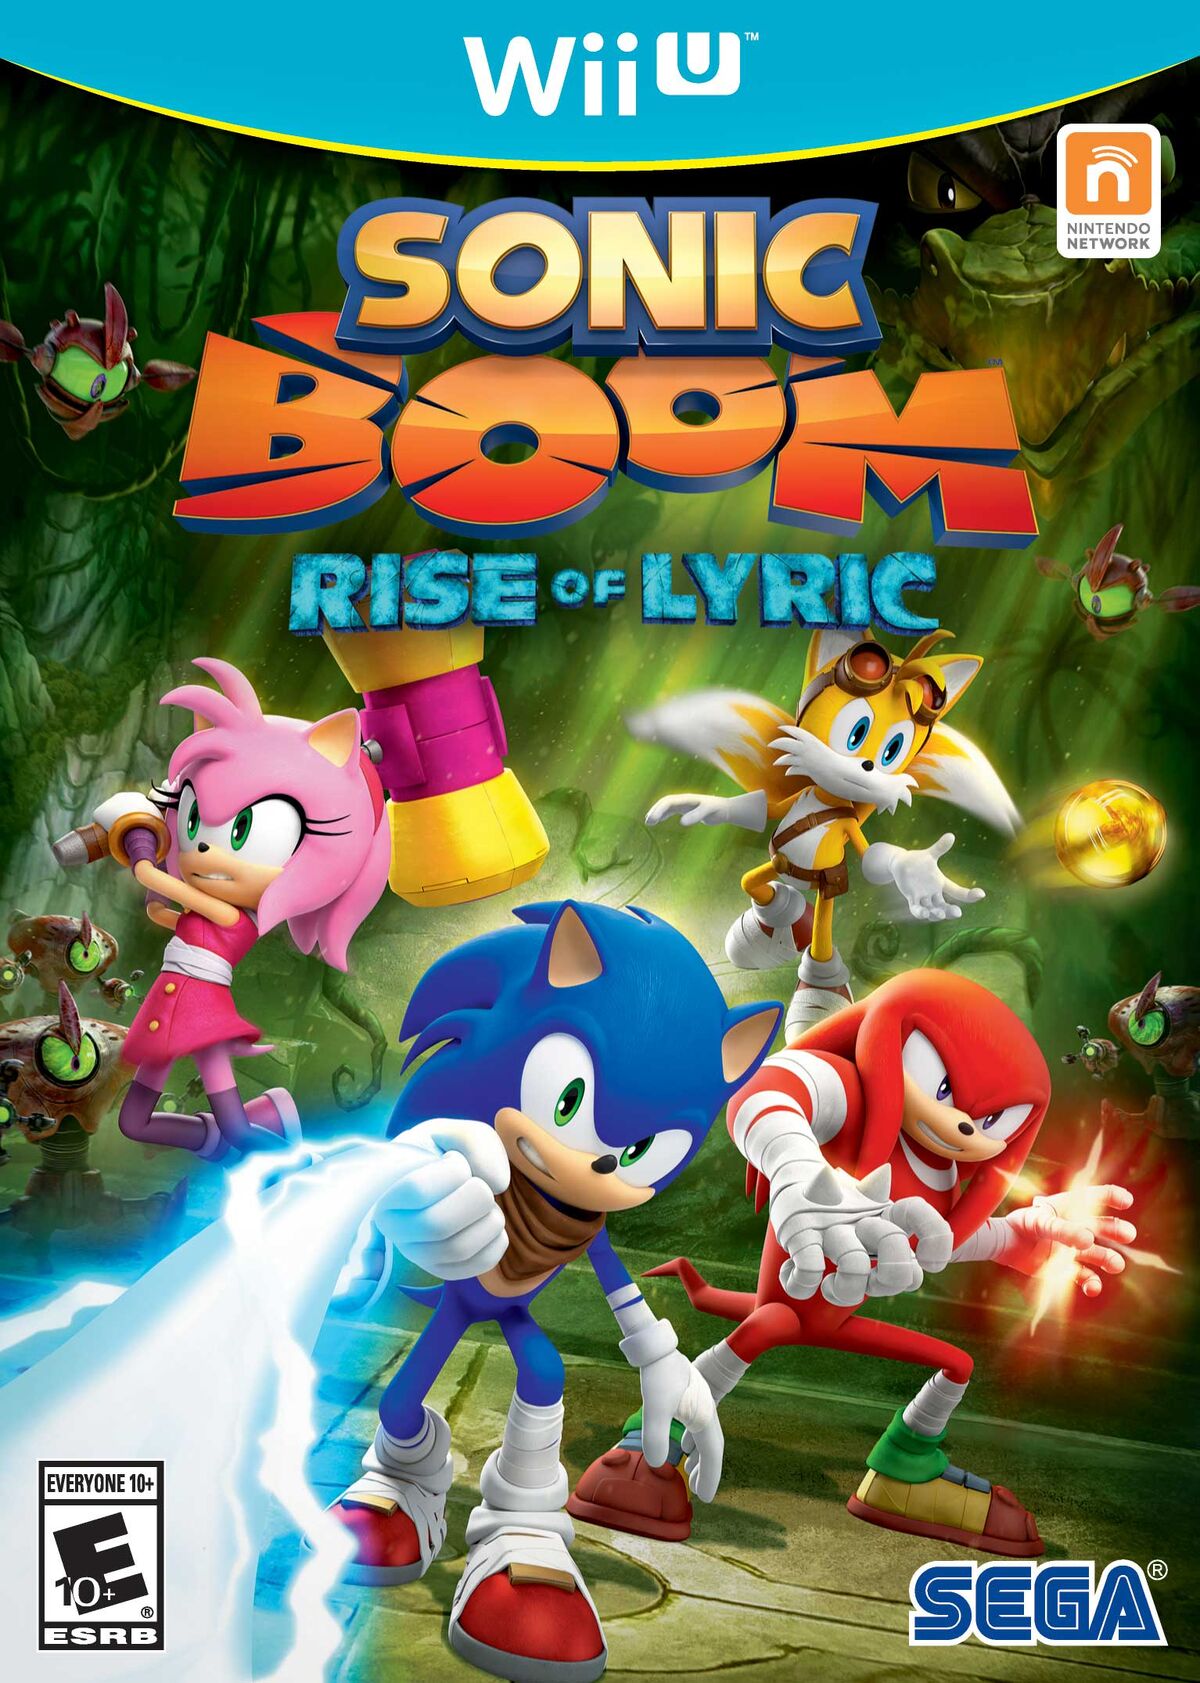 Melhores Jogos do Sonic Para Android 2016 